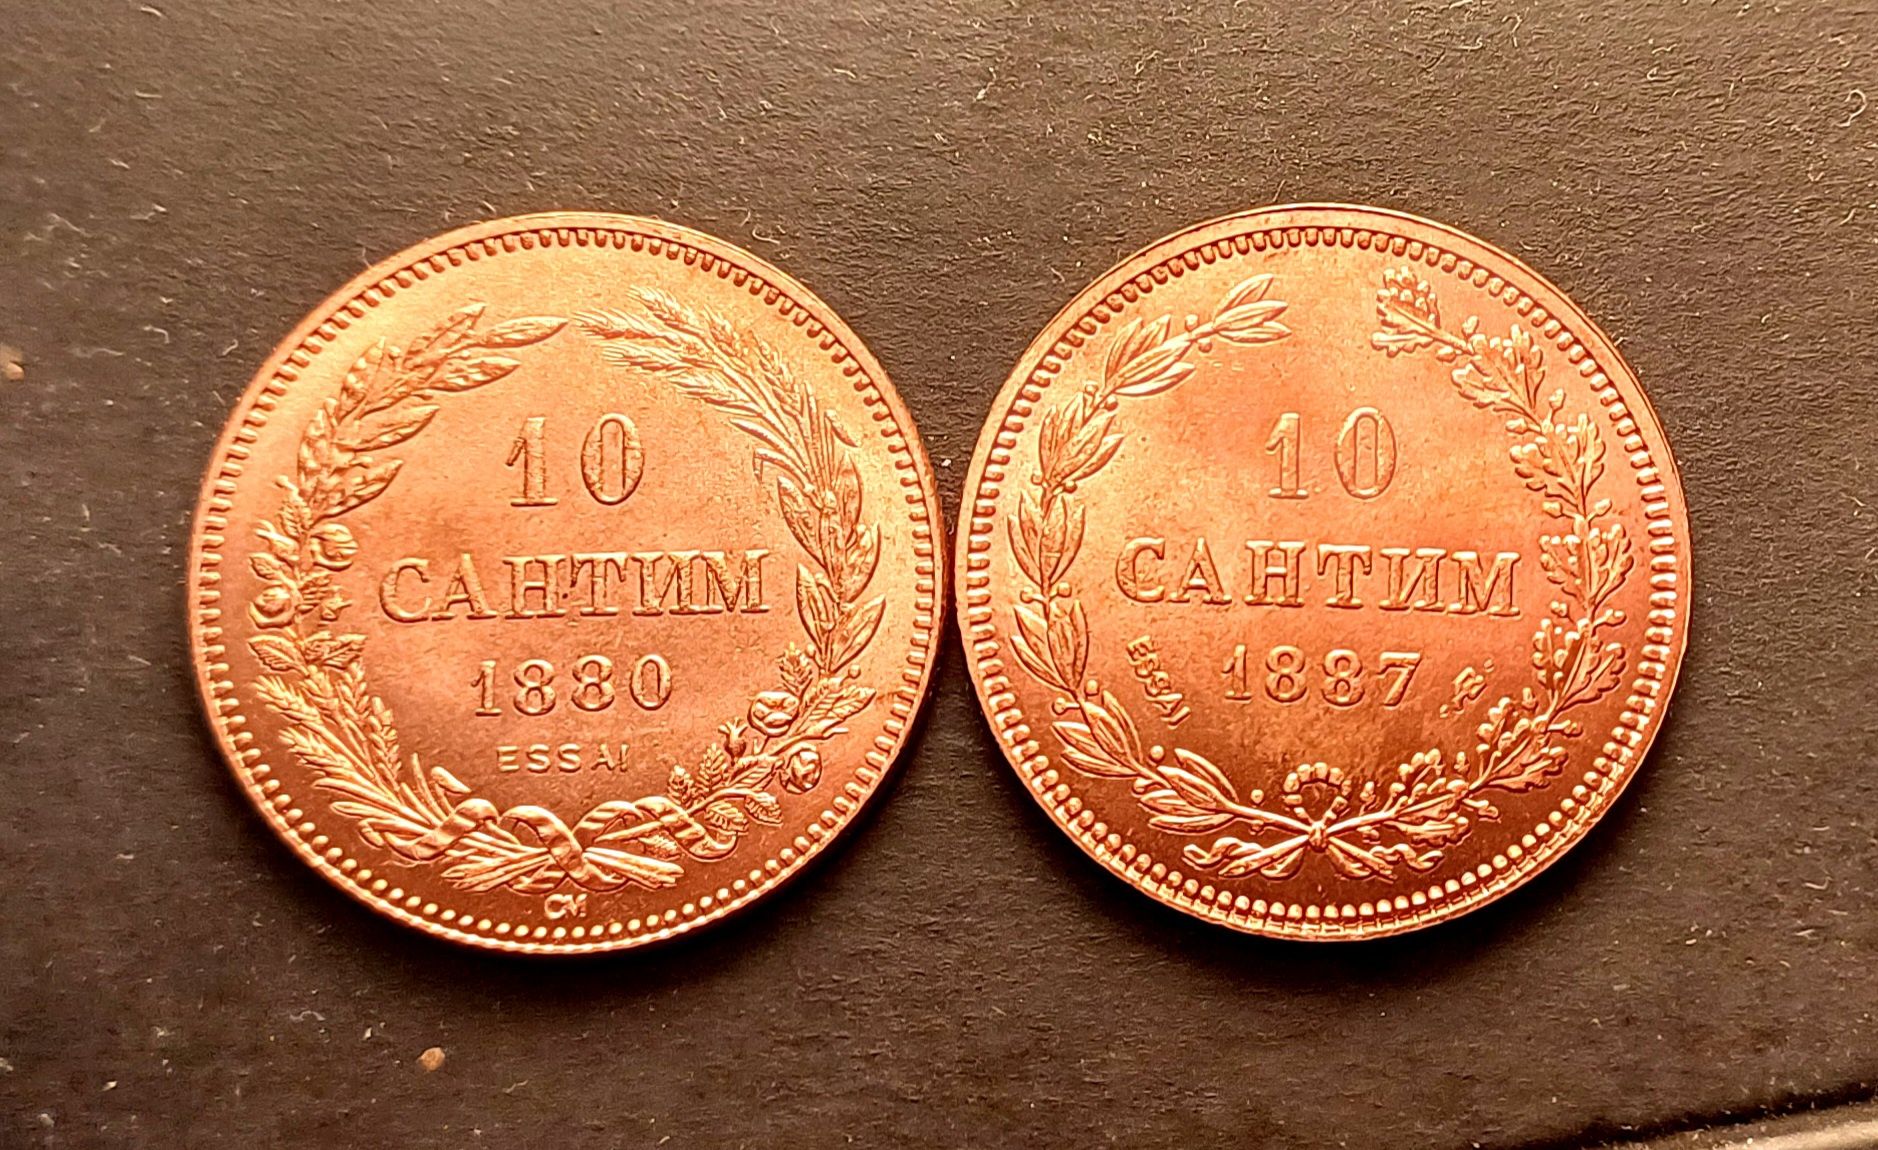 10 сантим 1880 и 1887 - реплики.